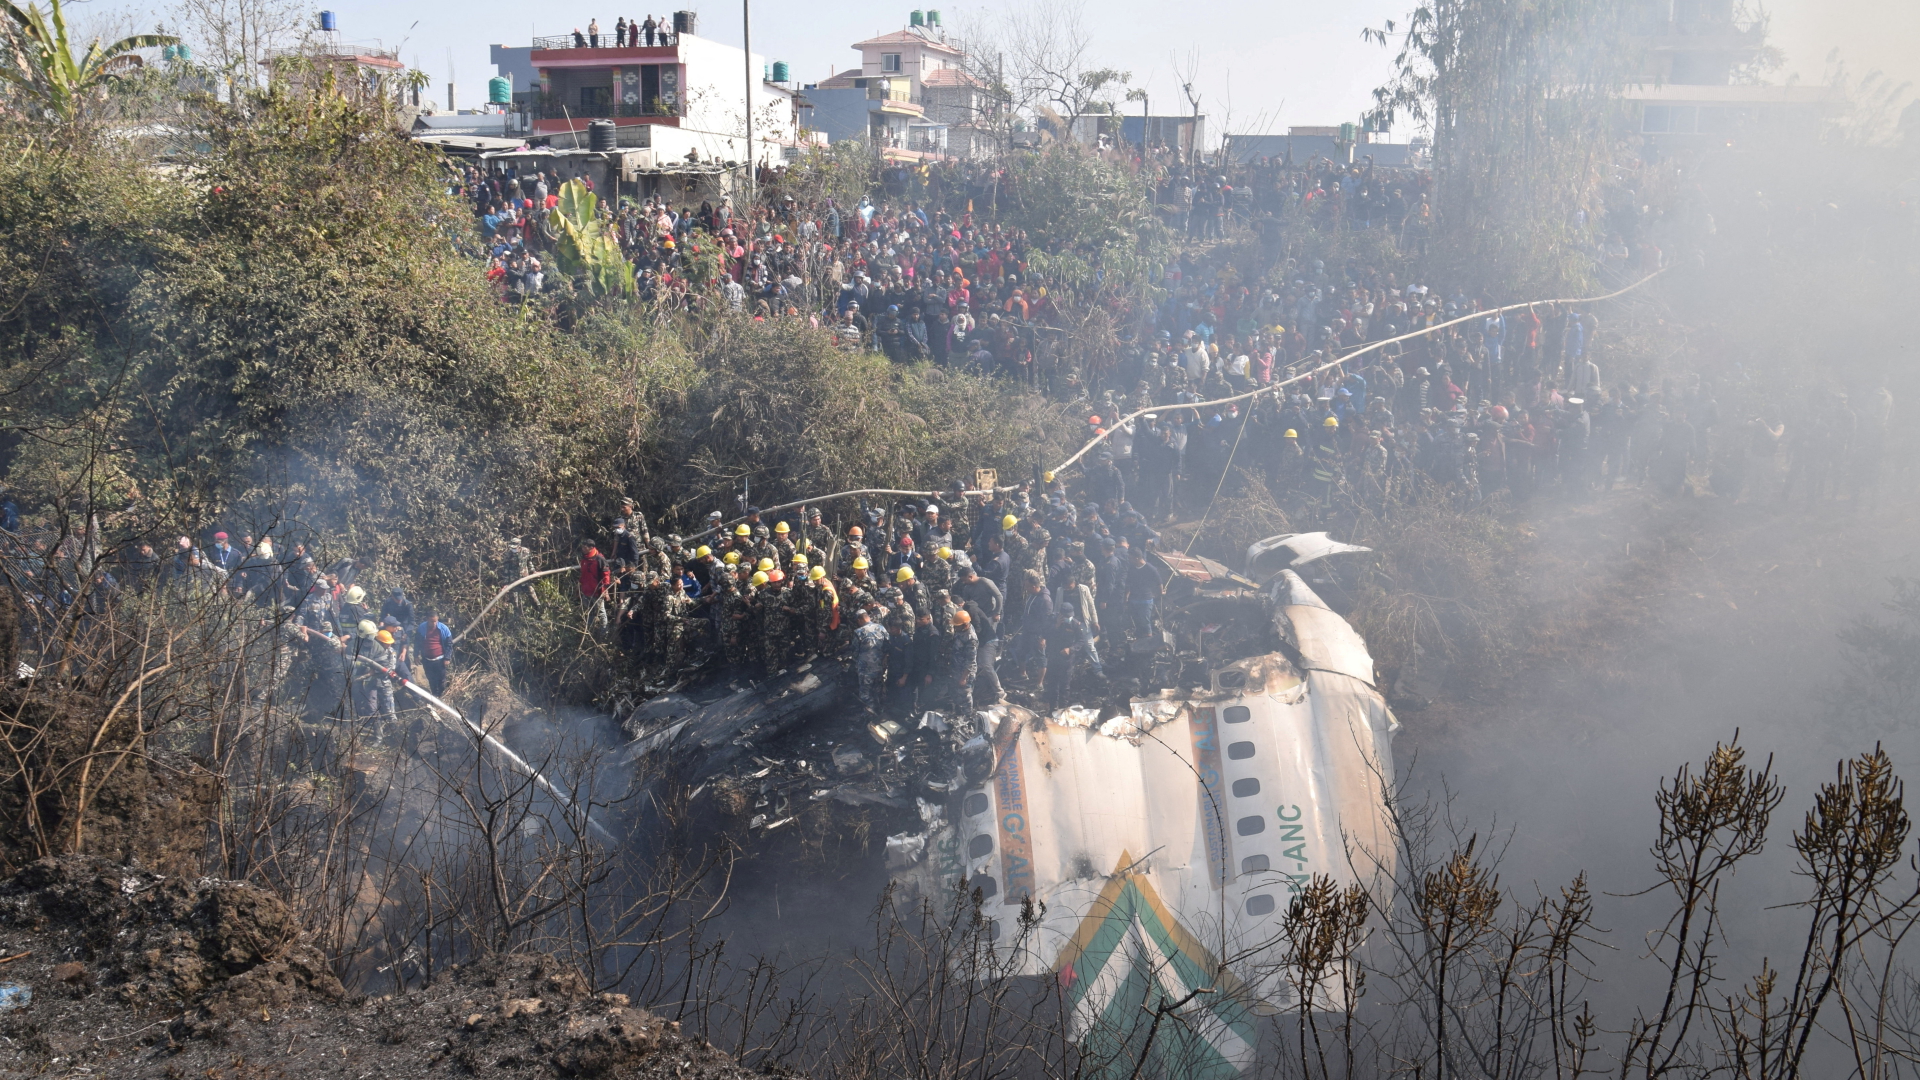 Rettungskräfte bergen Leichen aus dem abgestürzten Flugzeug in Nepal | REUTERS